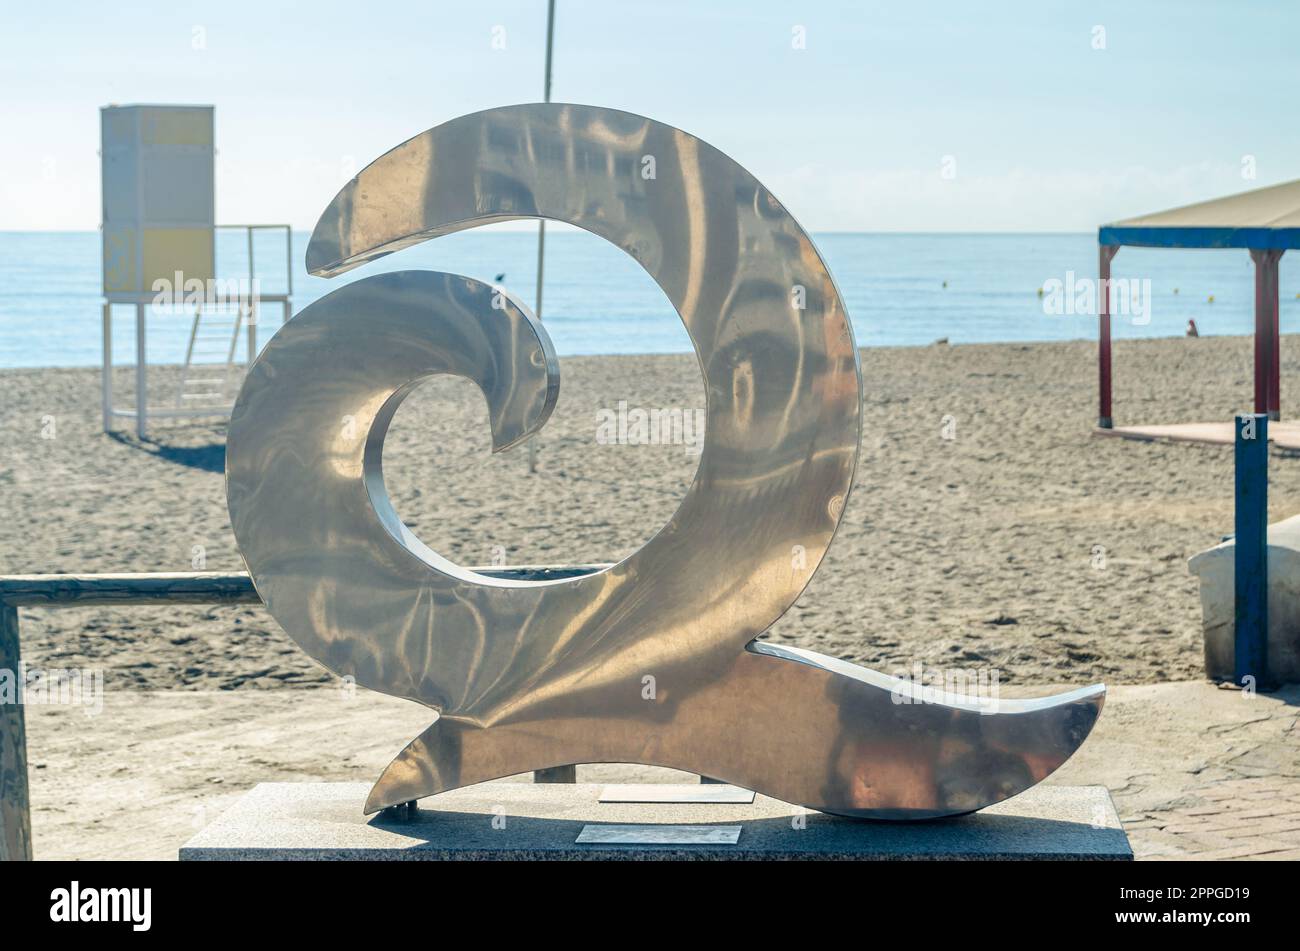 FUENGIROLA, SPAGNA - 9 OTTOBRE 2021: Simbolo Q per la qualità turistica sulla spiaggia di Fuengirola, situata sulla Costa del Sol, è una caratteristica concessa per riconoscere la qualità turistica delle spiagge in Spagna Foto Stock